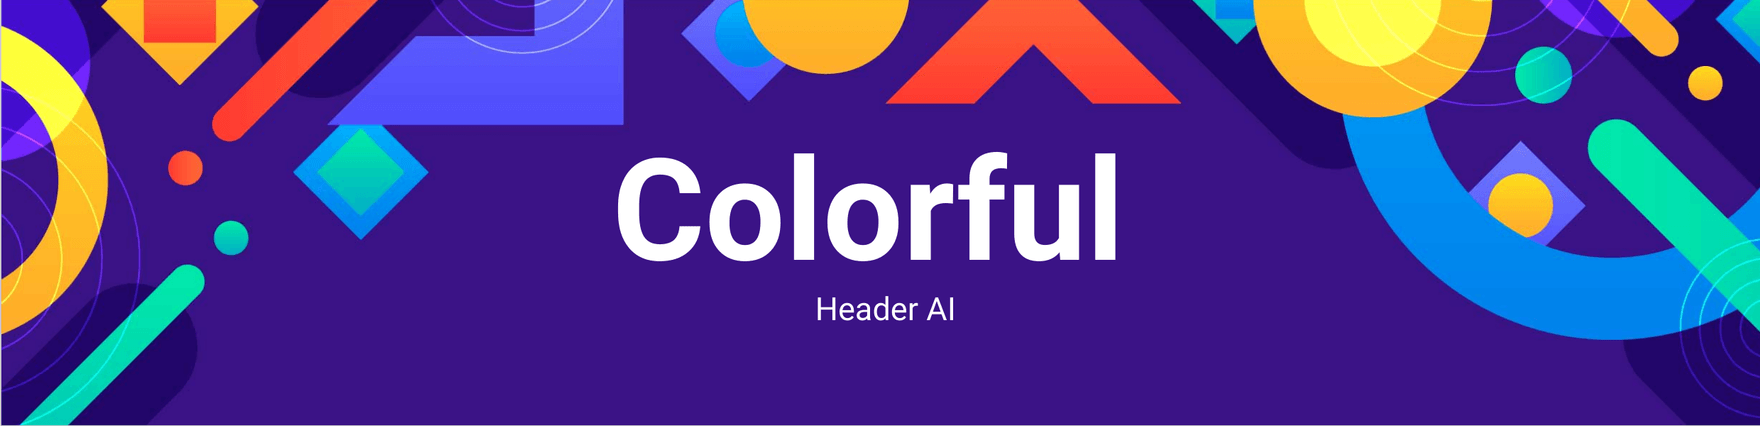 Colorful Header AI